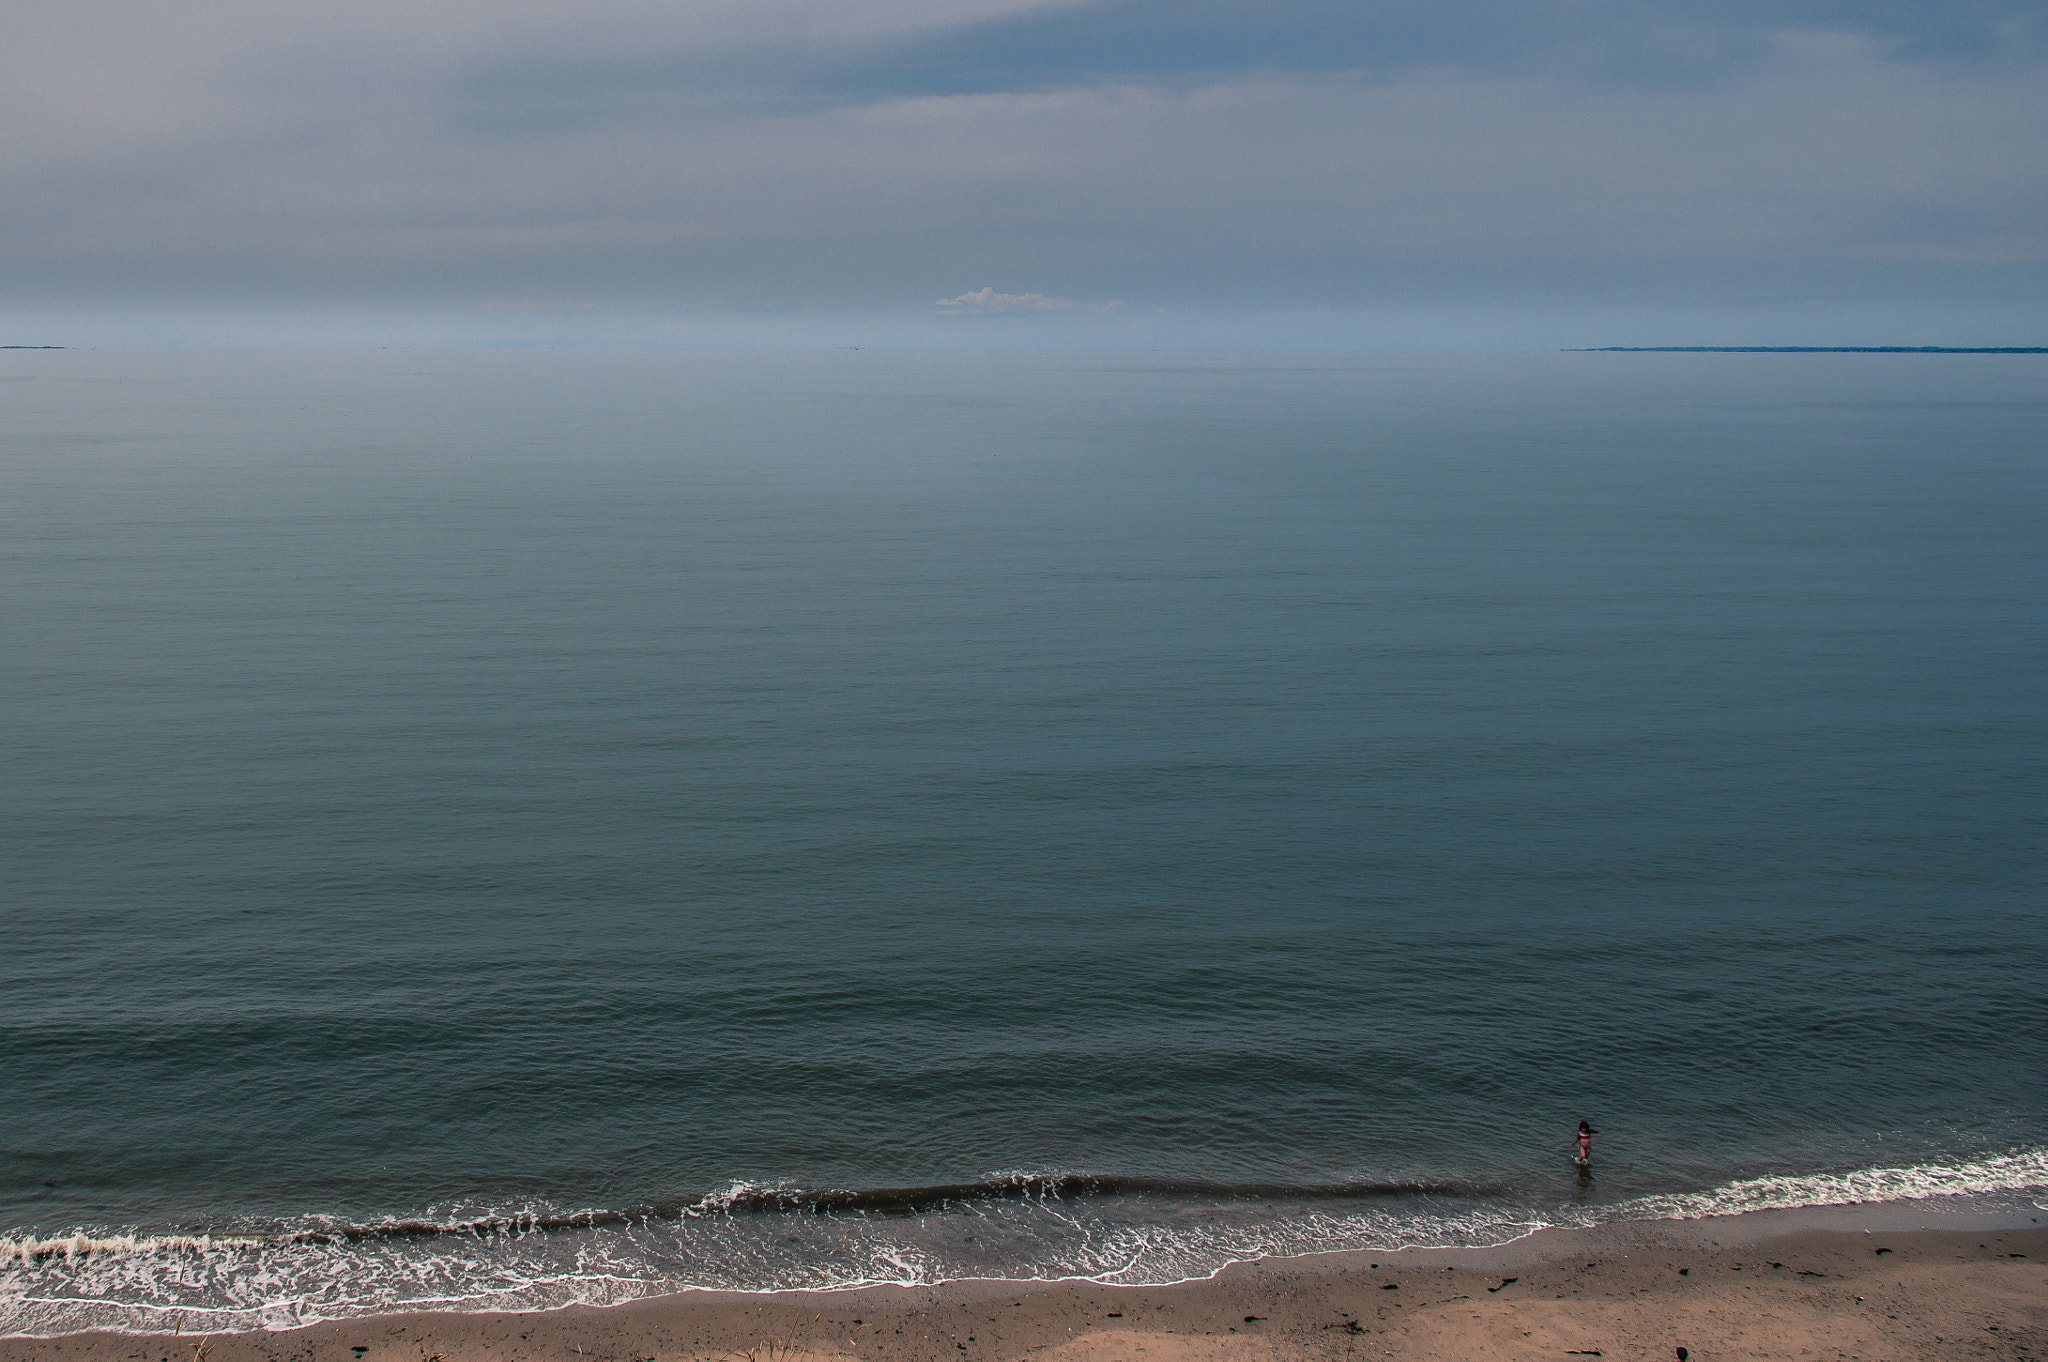 Pentax K-3 sample photo. "l'océan... pour moi, toute seule!" photography